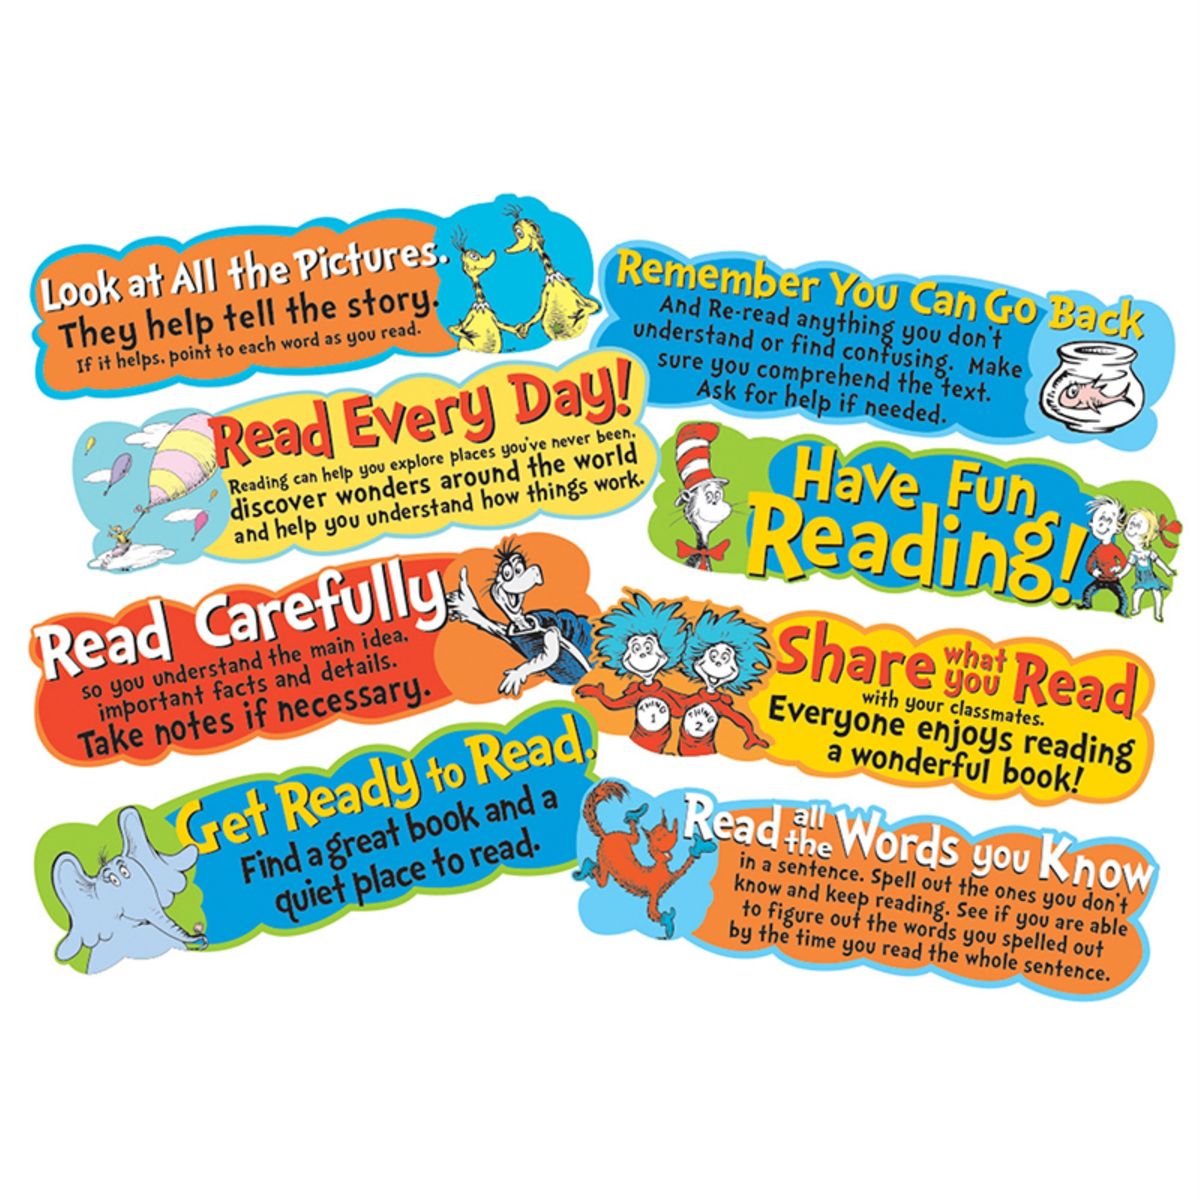 楽天Walmart 楽天市場店[送料無料] Dr. Seuss Reading Tips ミニ掲示板セット [楽天海外通販] | Dr. Seuss Reading Tips Mini Bulletin Board Set